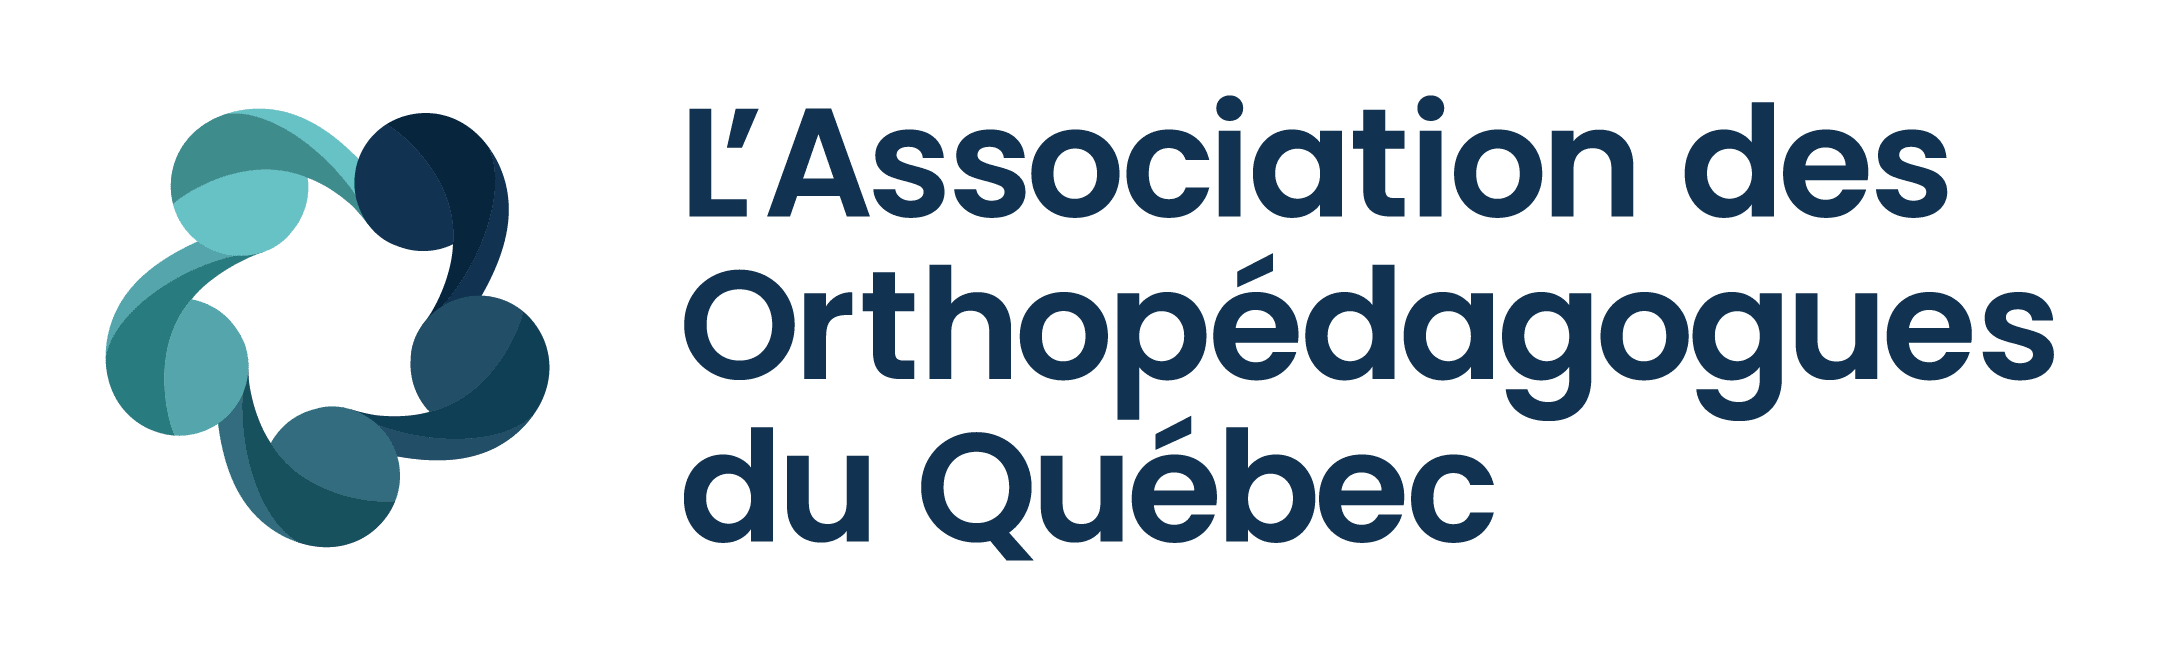 L'Association des Orthopédagogues du Québec